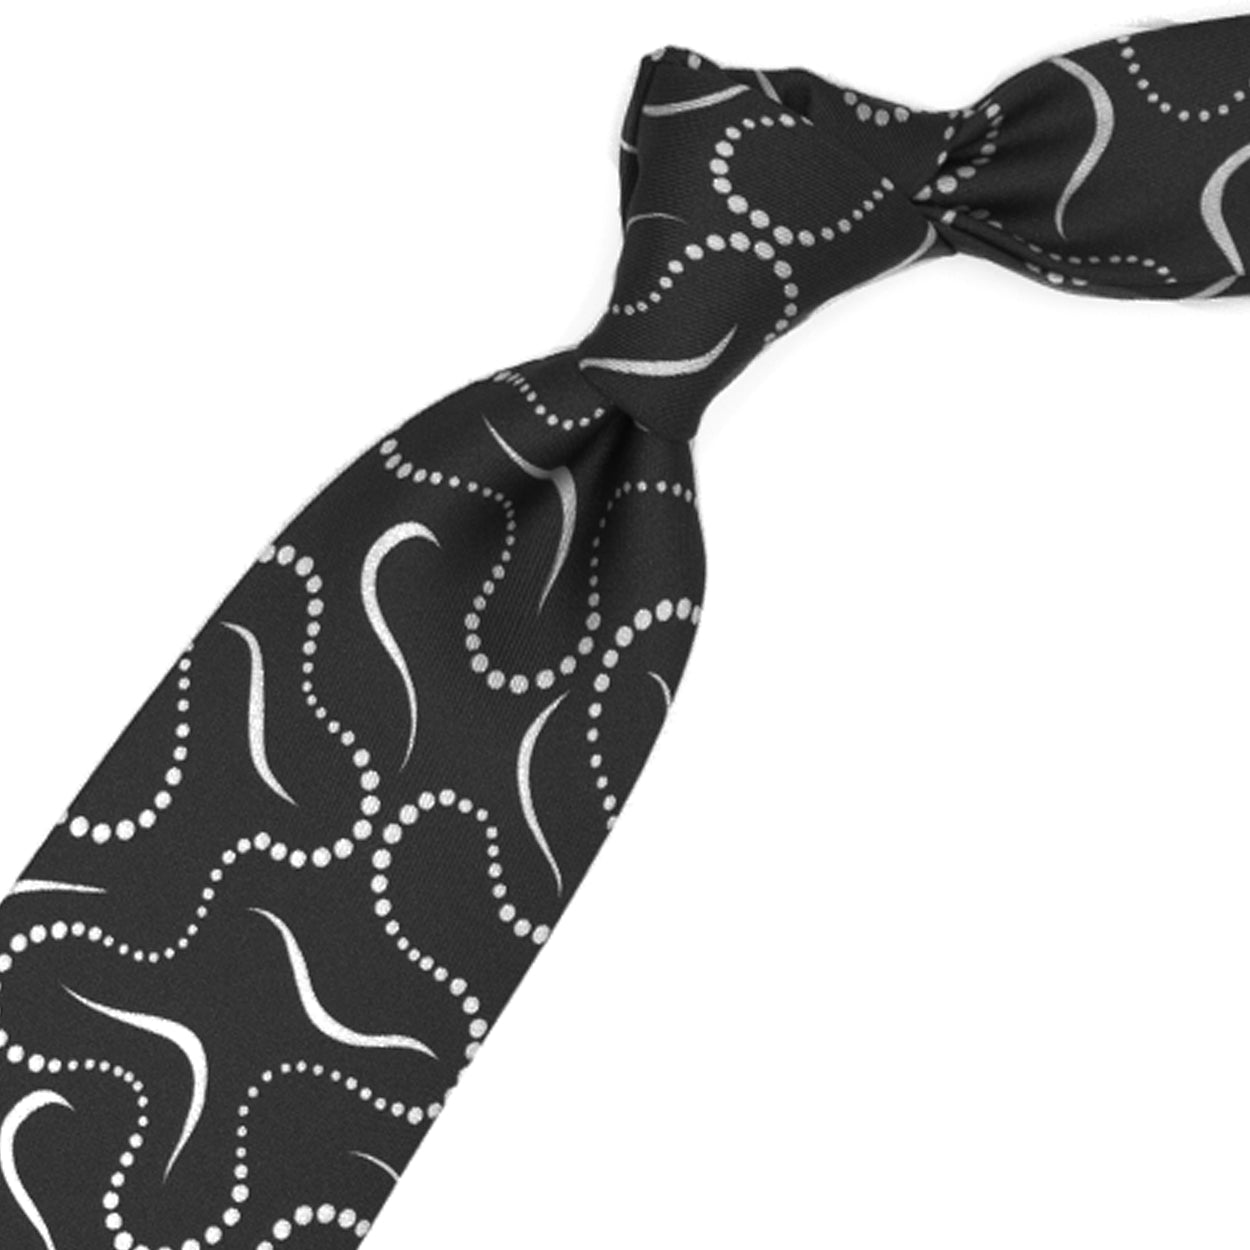 Cravatta nera con pattern astratto bianco